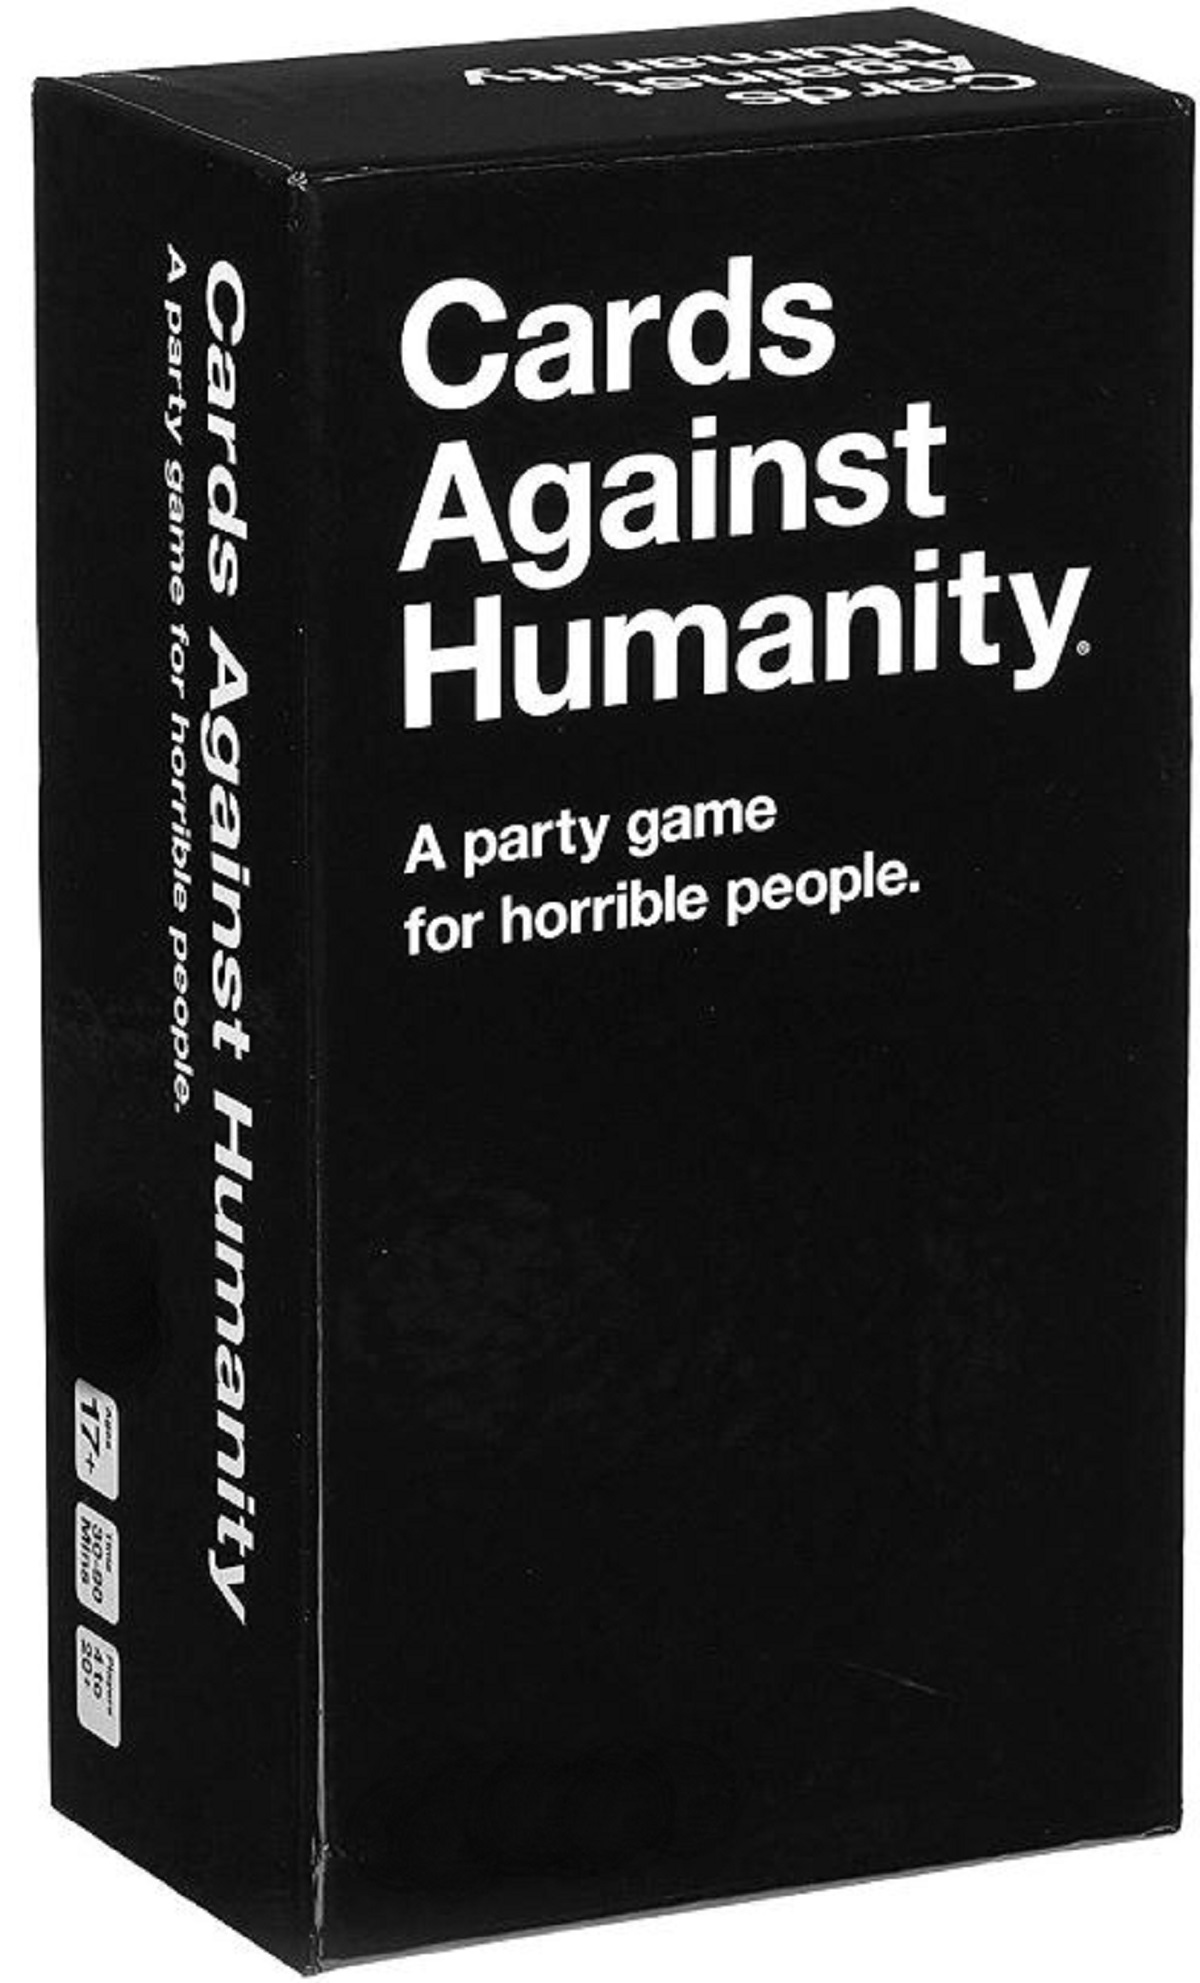 Joc pentru adulti: Cards Against Humanity